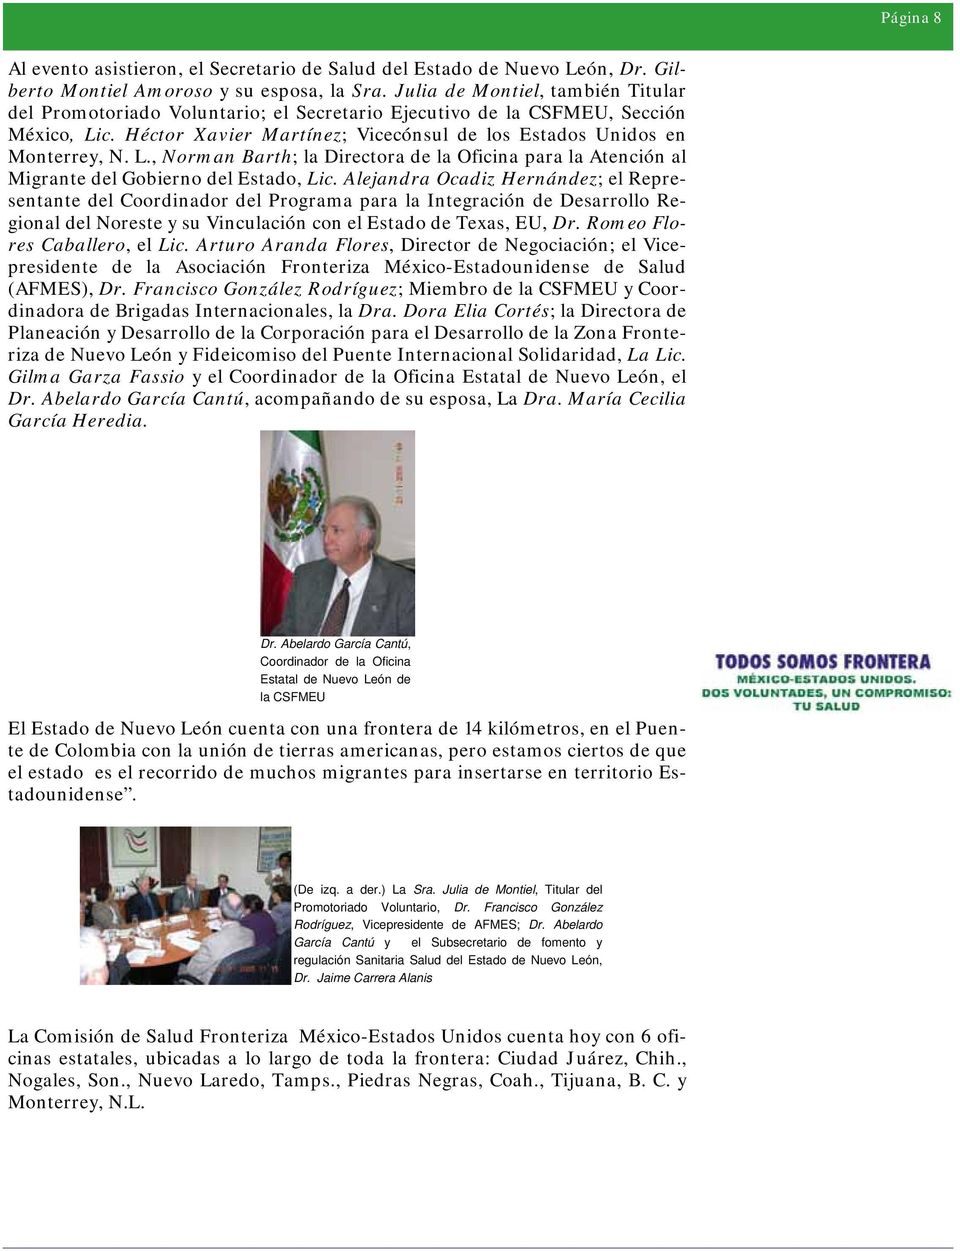 c. Héctor Xavier Martínez; Vicecónsul de los Estados Unidos en Monterrey, N. L., Norman Barth; la Directora de la Oficina para la Atención al Migrante del Gobierno del Estado, Lic.